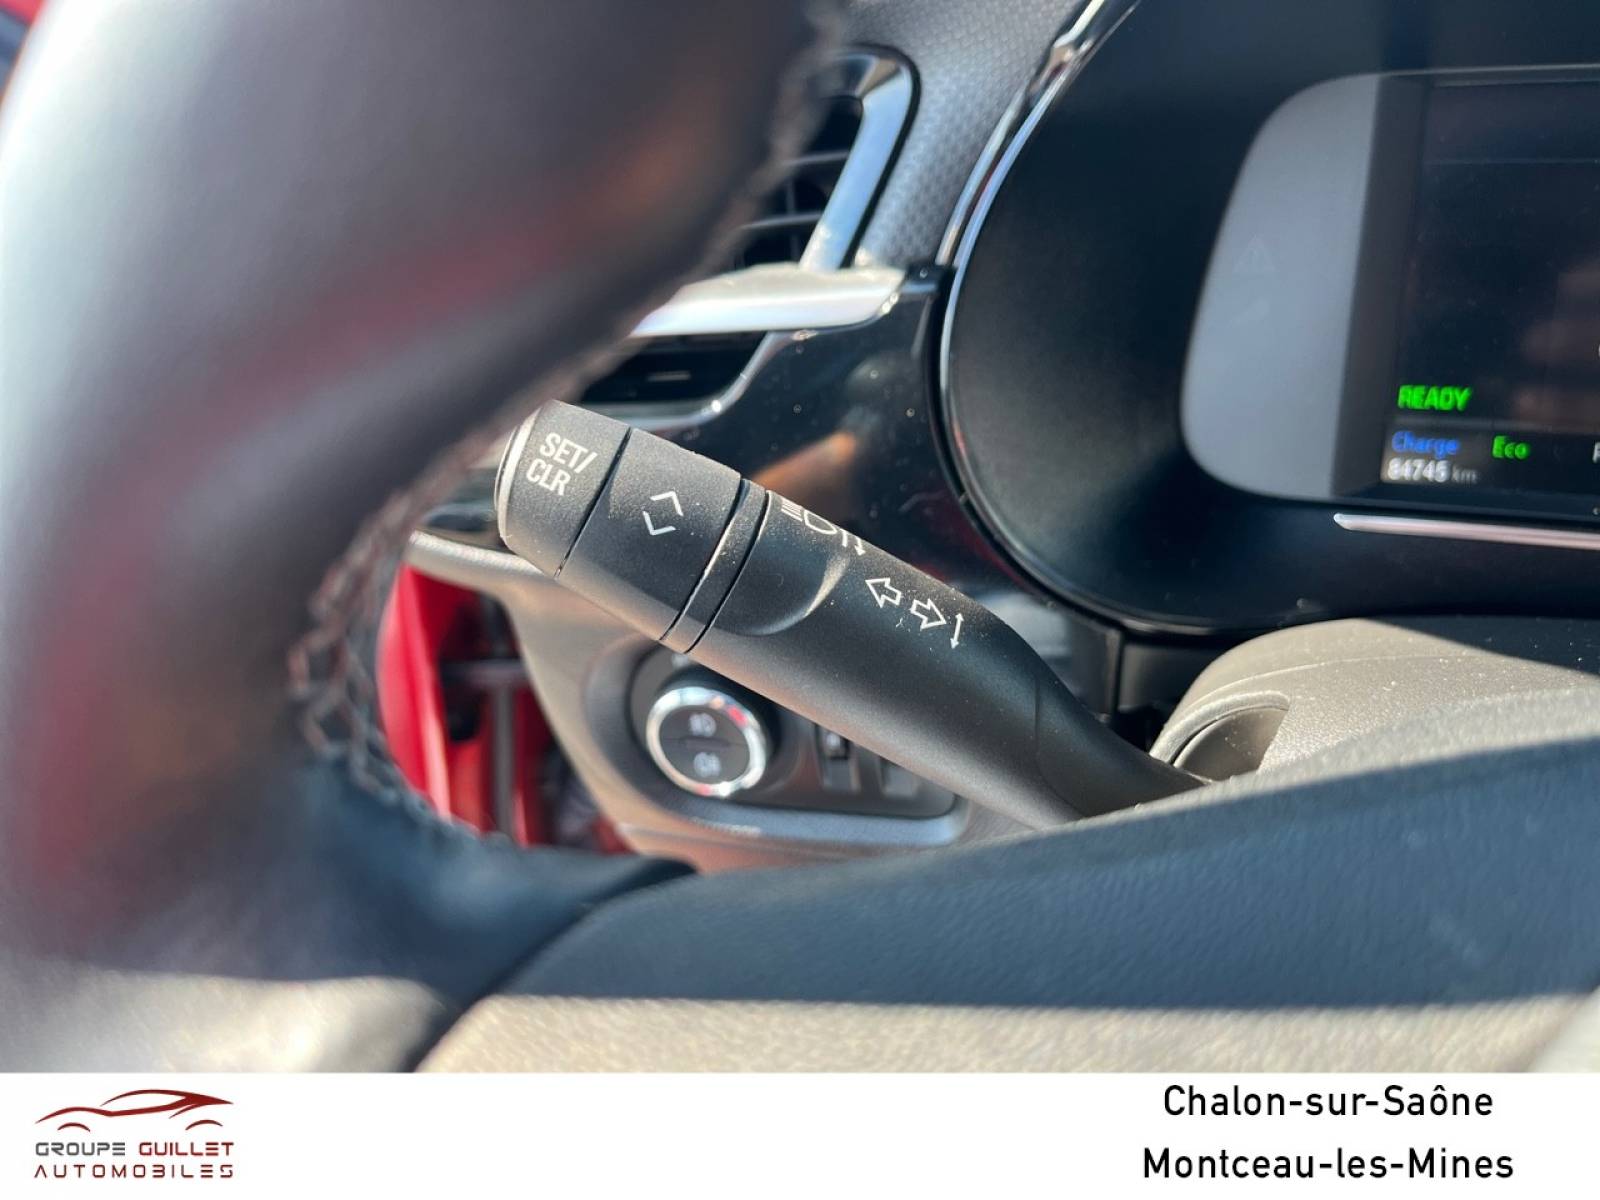 OPEL Corsa Electrique 136 ch & Batterie 50 kw/h - véhicule d'occasion - Groupe Guillet - Opel Magicauto Chalon - 71380 - Saint-Marcel - 25